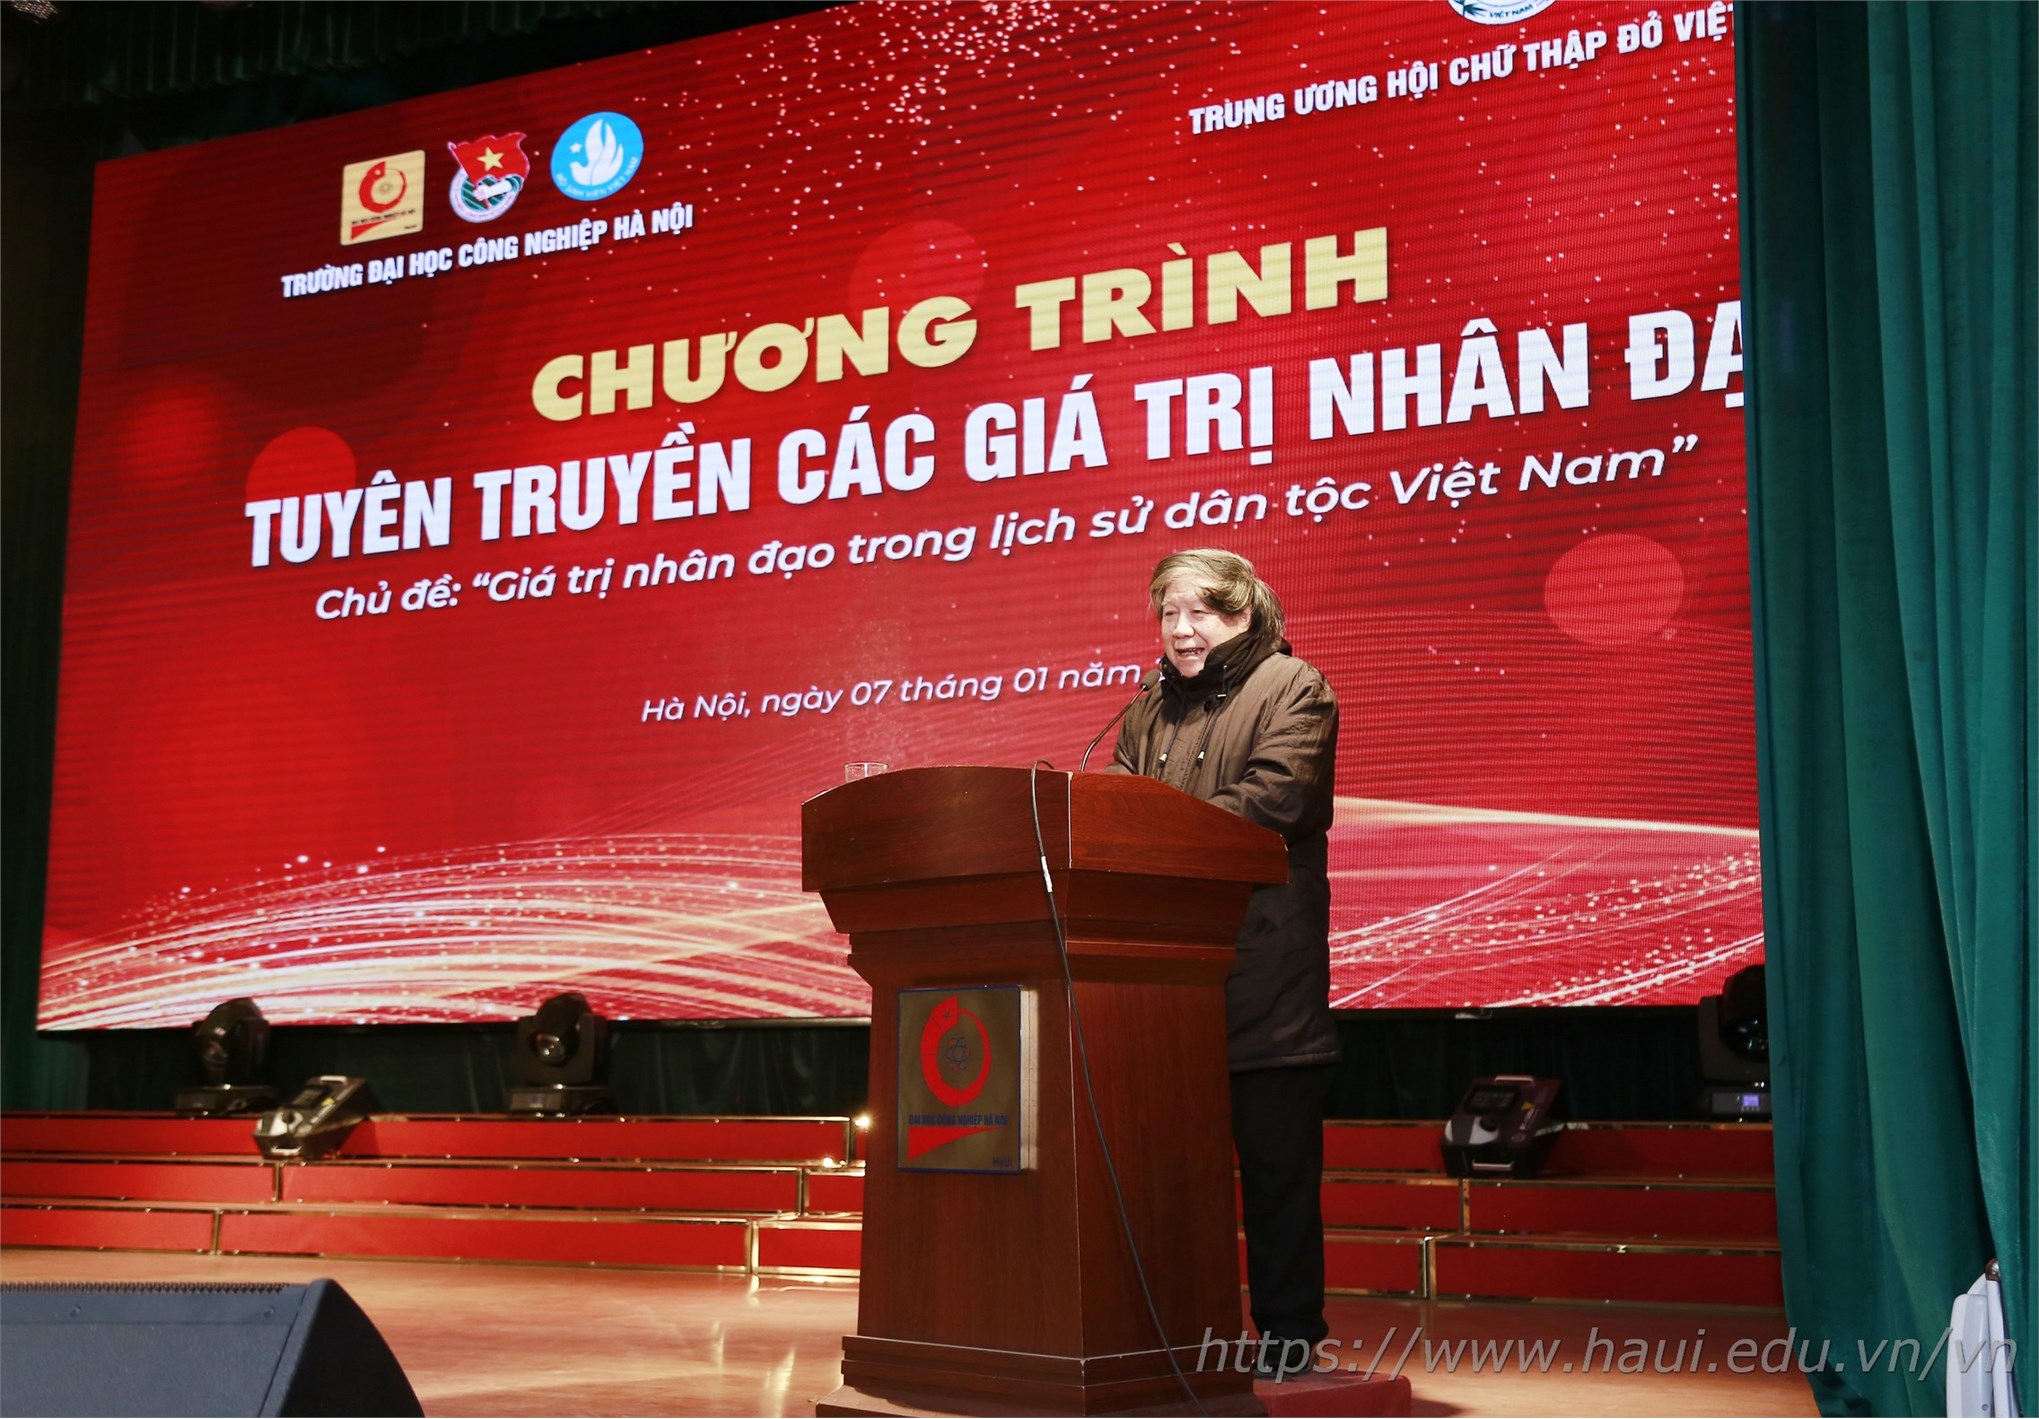 Kỷ niệm 71 năm ngày truyền thống học sinh, sinh viên và Hội sinh viên Việt Nam 